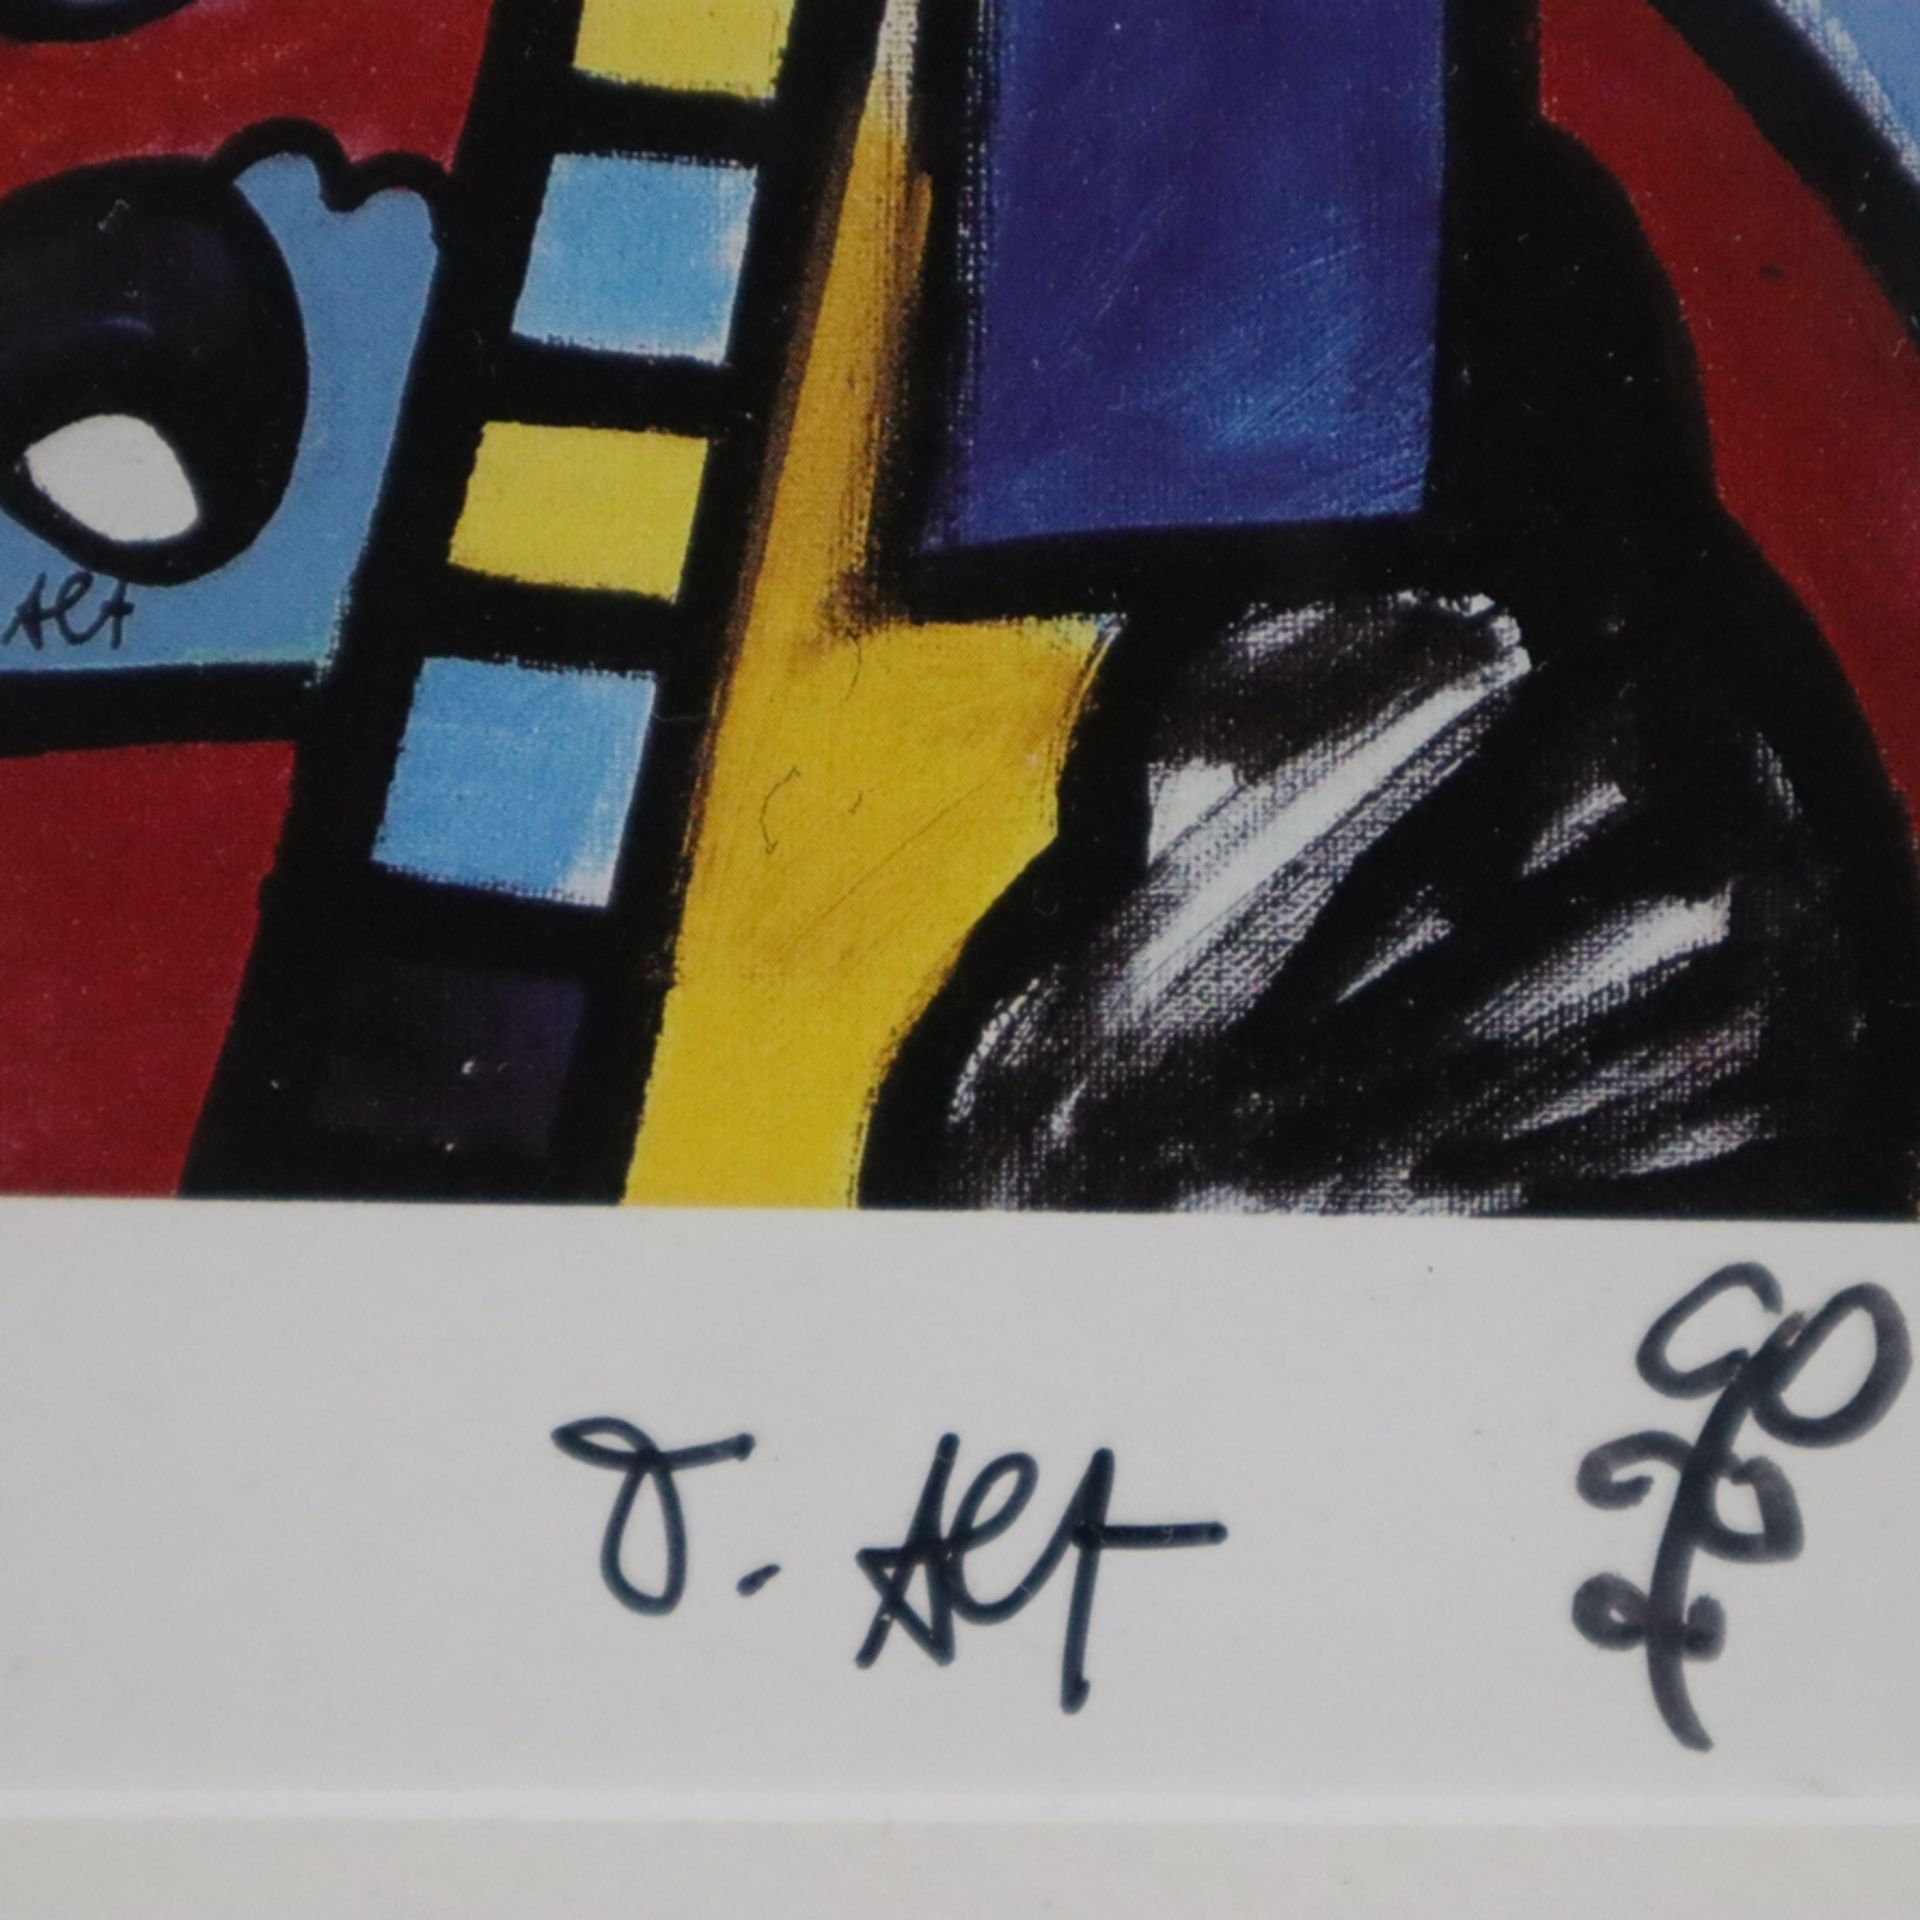 Alt, Otmar (*1940 in Wernigerode) - "Pferd" (1991), Kunstpostkarte, Multiple, Handsignatur mit klei - Bild 4 aus 4